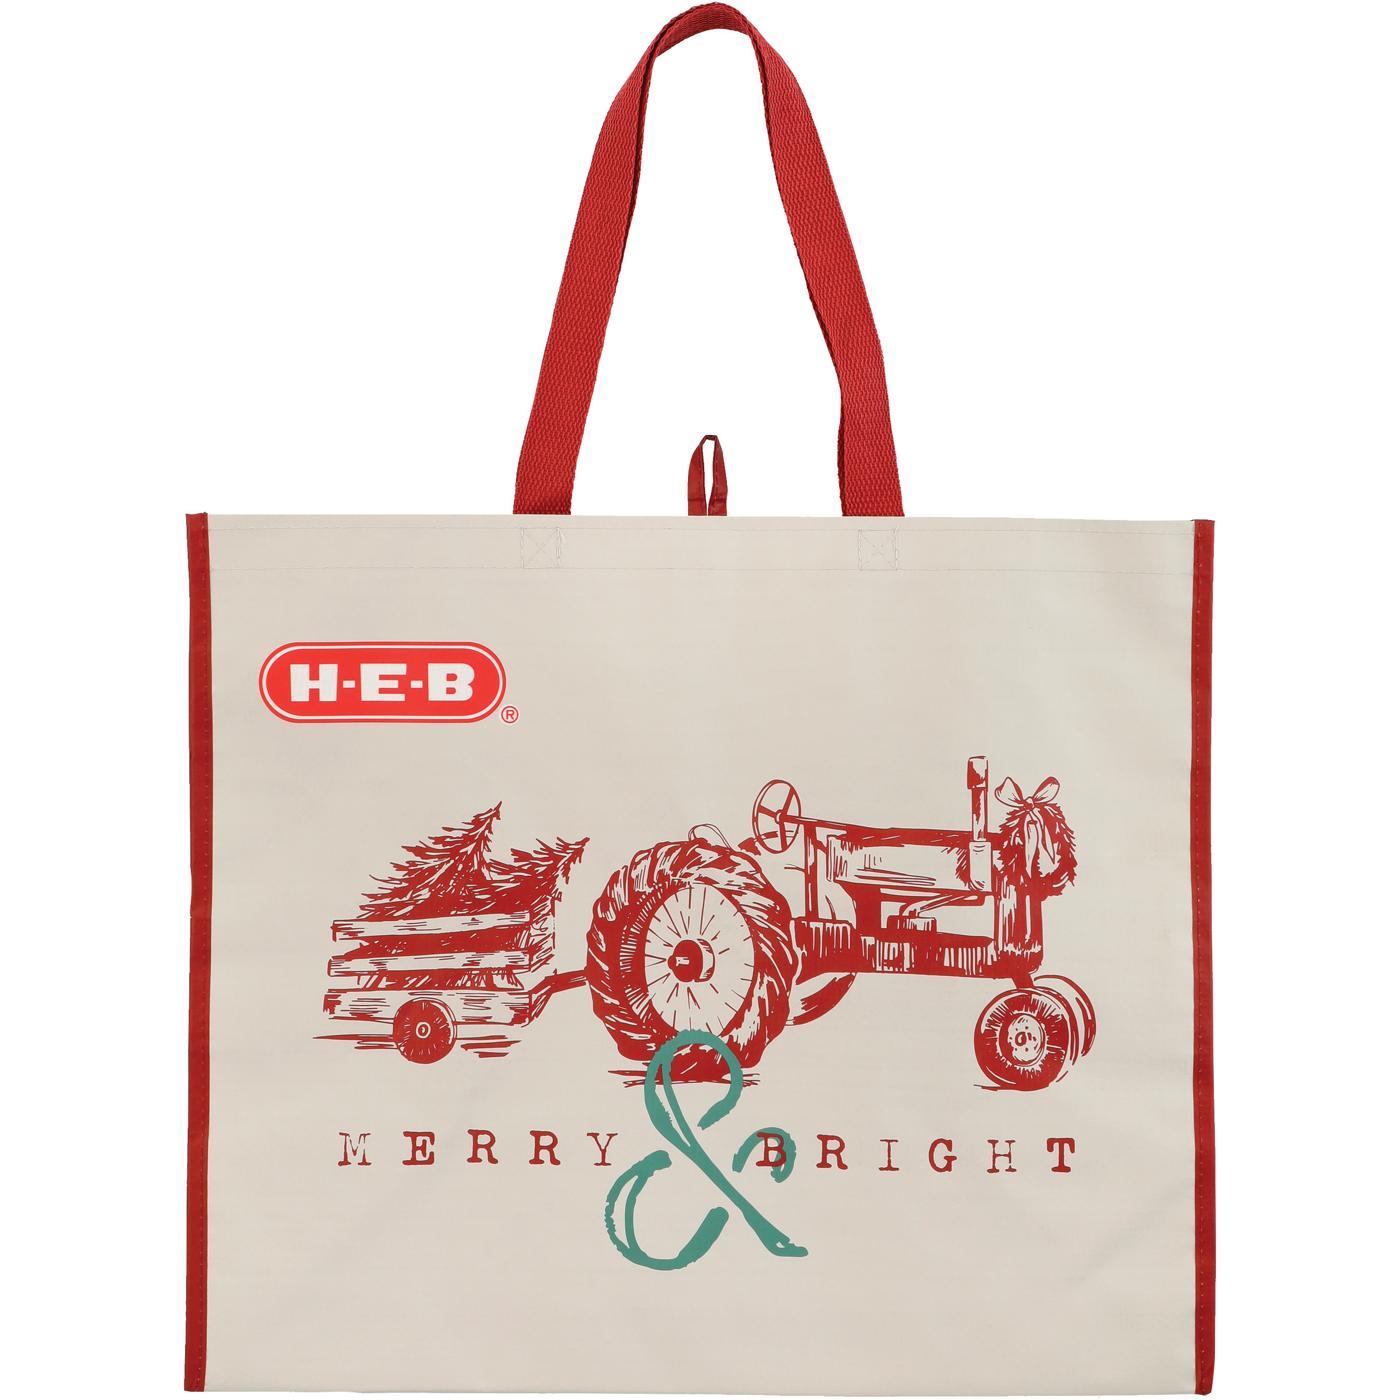 H-E-B Merry & Bright Christmas Tractor Reusable Shopping Bag